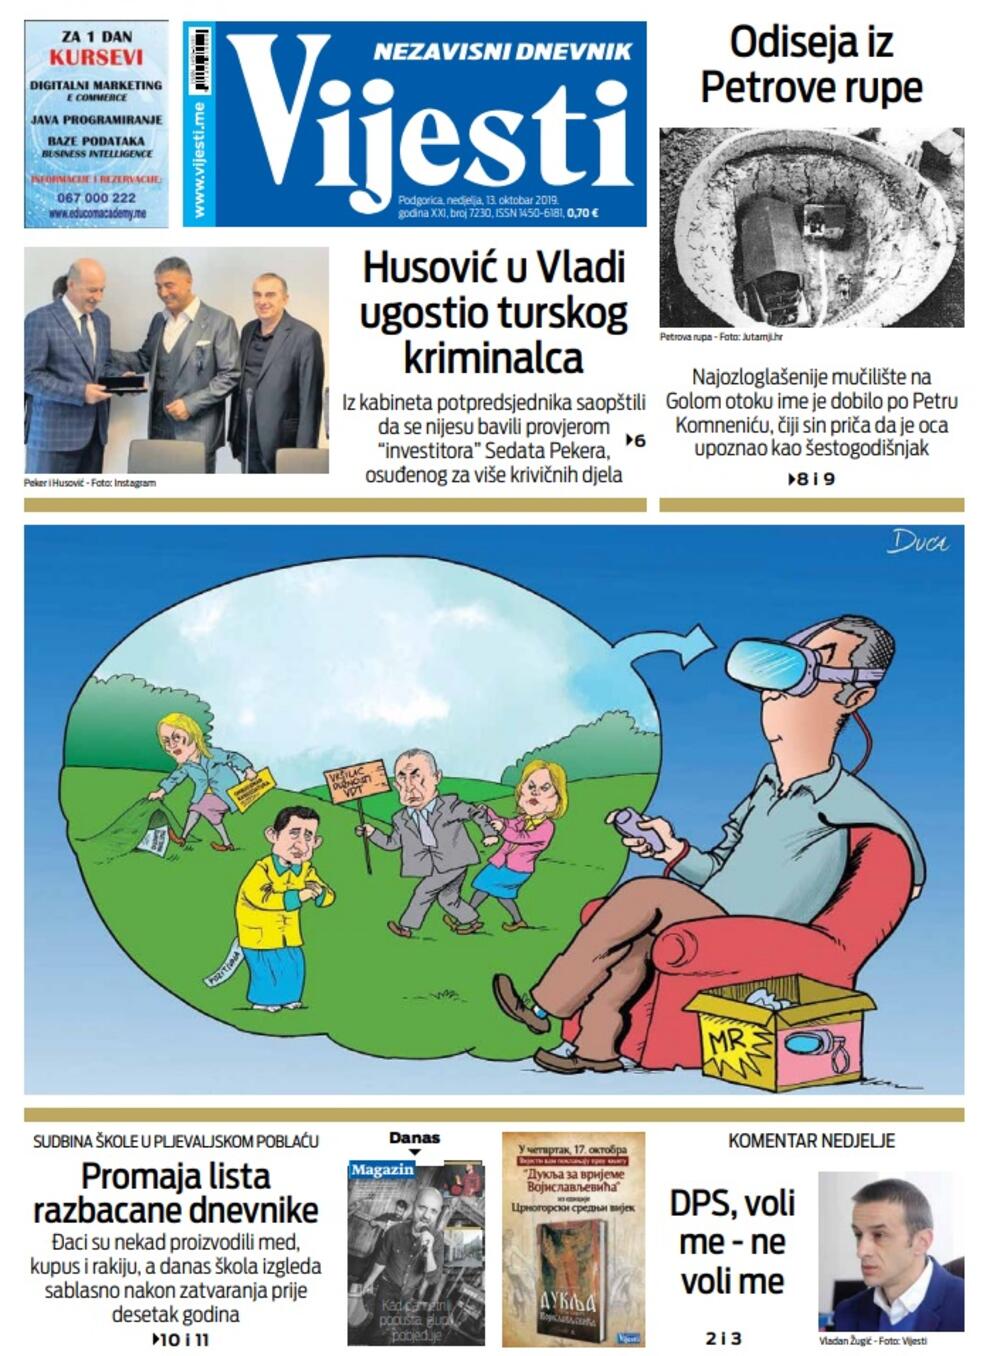 Naslovna strana "Vijesti" za 13. oktobar 2019. godine